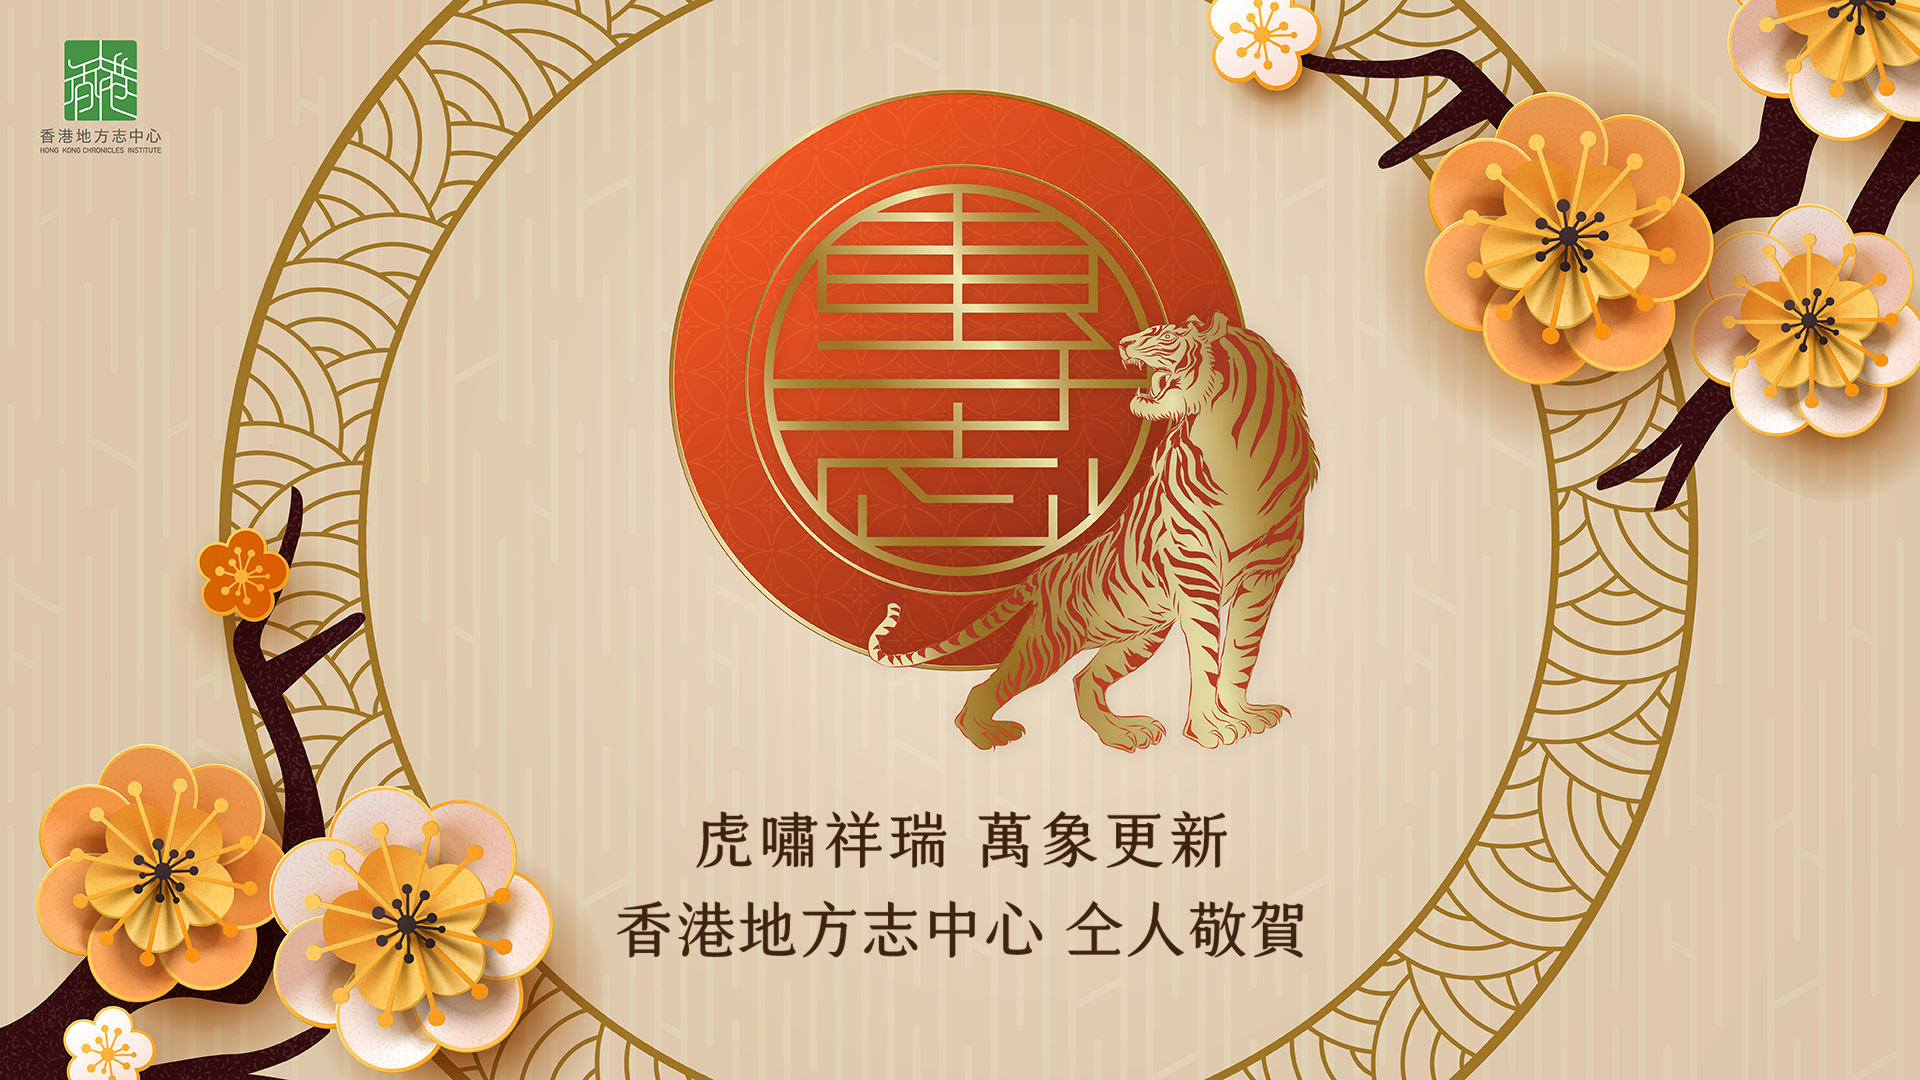 香港地方志中心恭祝大家虎嘯祥瑞，萬象更新！